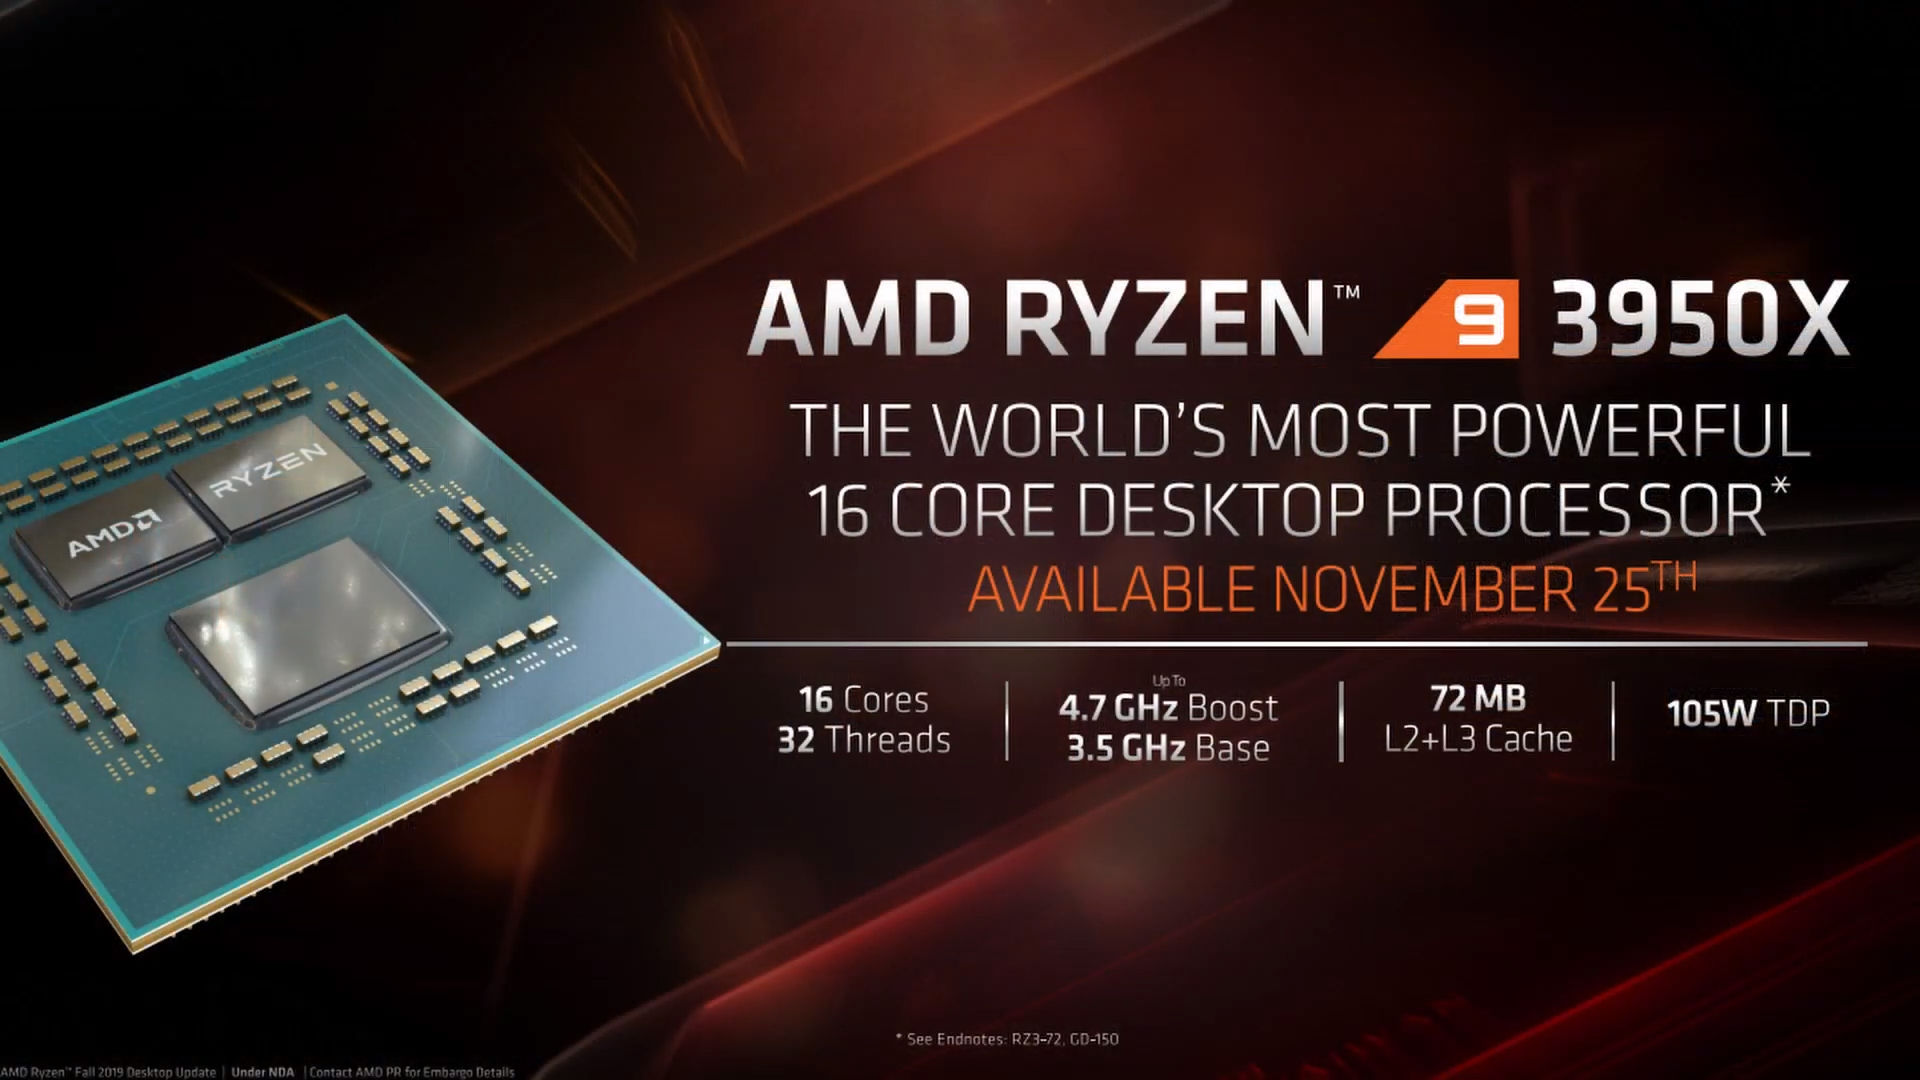 AMD นำเสนอ AMD Ryzen™ 9 3950X โพรเซสเซอร์ประมวลผล 16 คอร์ ที่ทรงพลังที่สุดในโลก